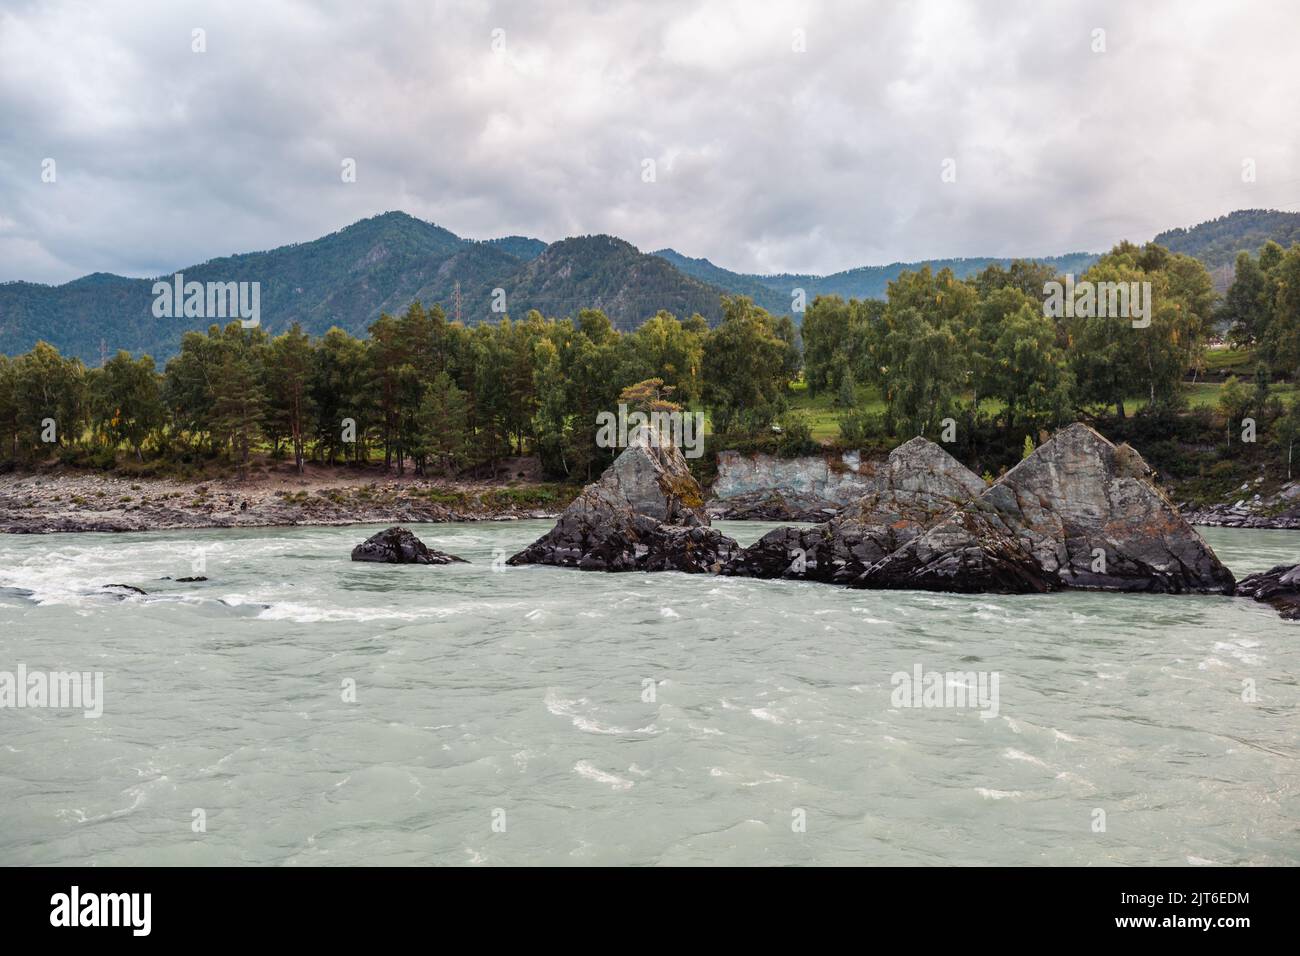 Ein schnell fließender breiter und voll fließender Gebirgsfluss. Große Felsen ragen aus dem Wasser. Großer Gebirgsfluss Katun, türkisfarben, im Altai-Gebirge Stockfoto